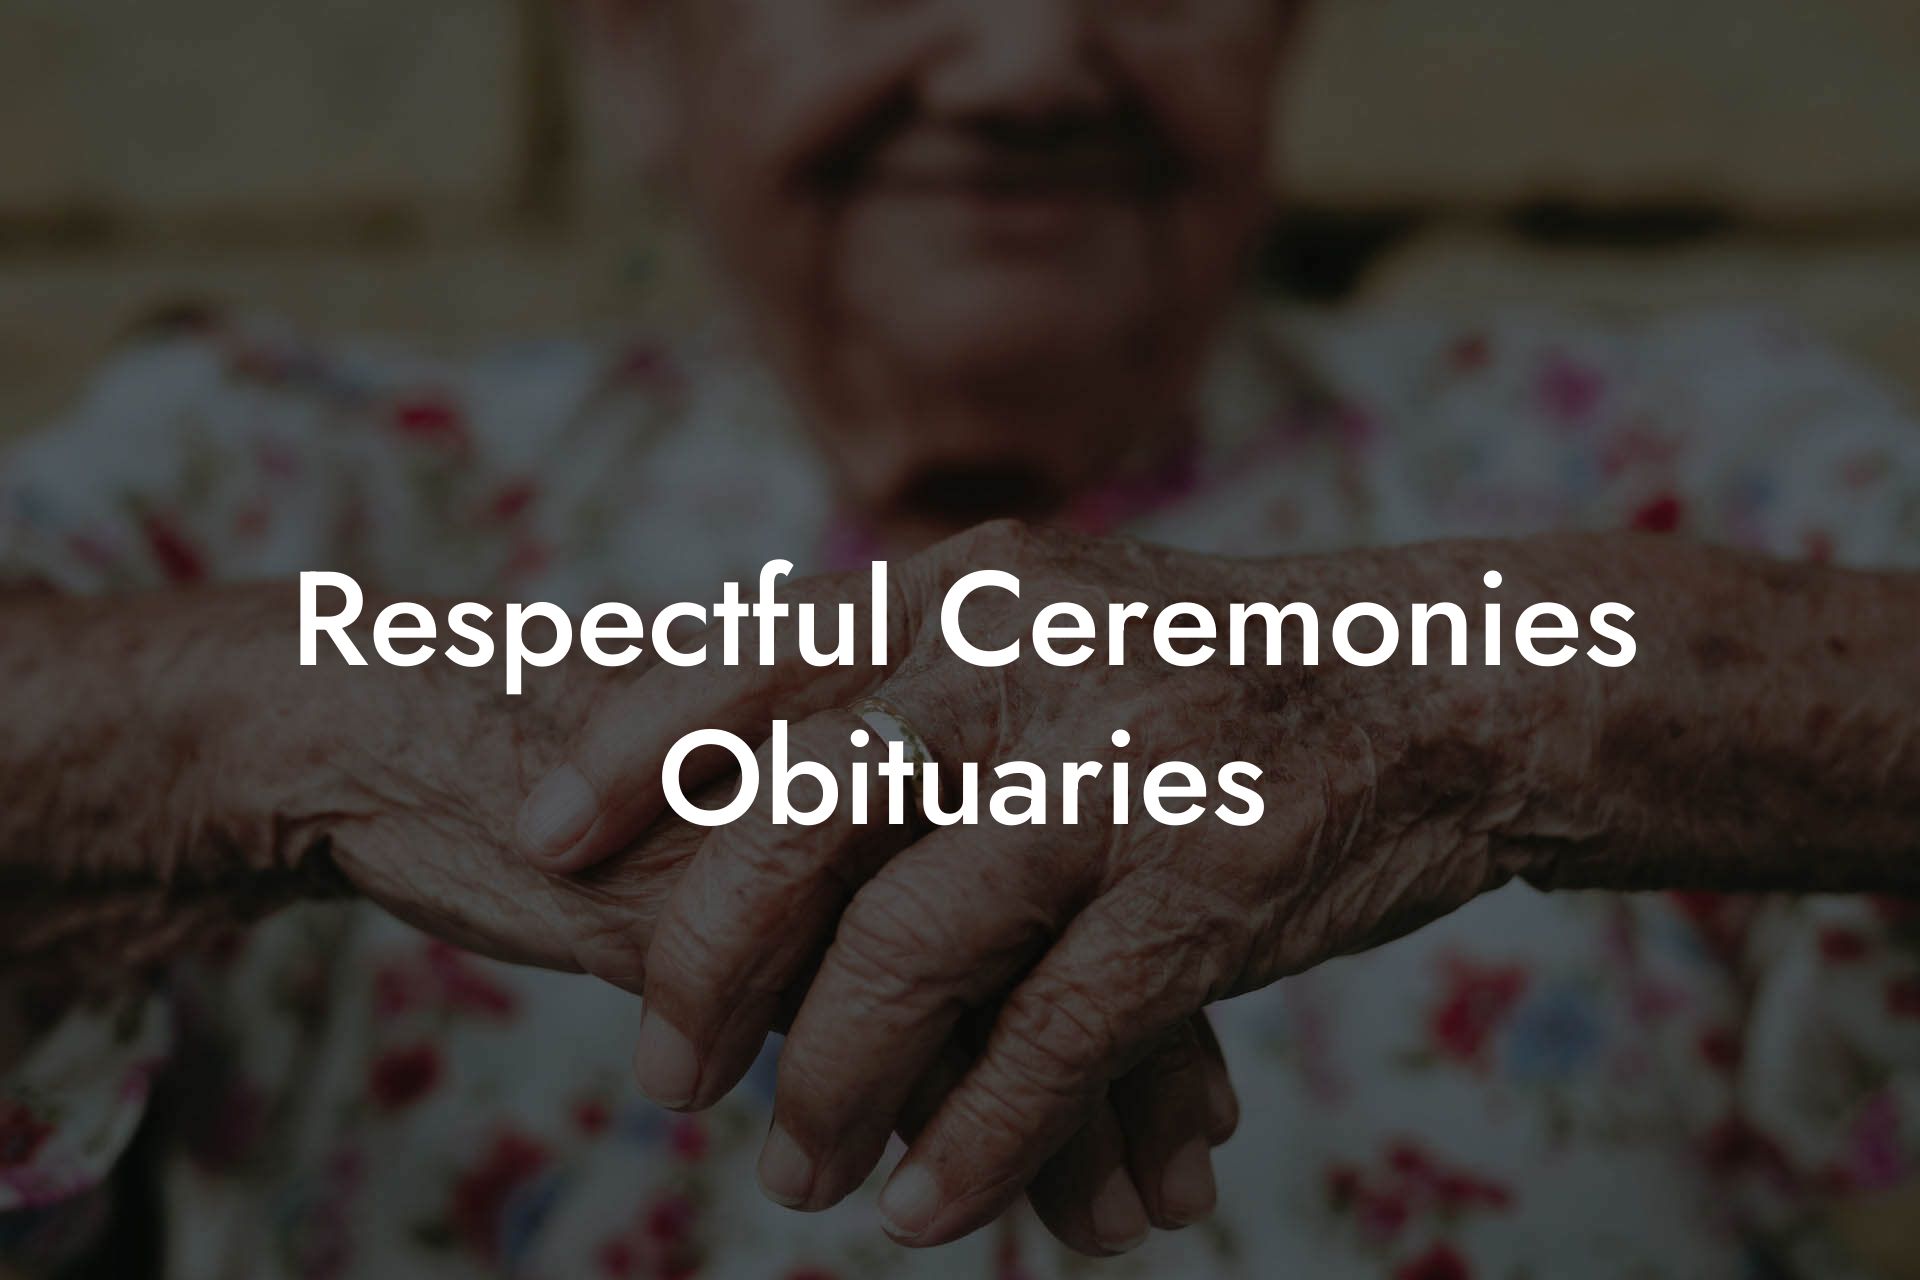 Respectful Ceremonies Obituaries